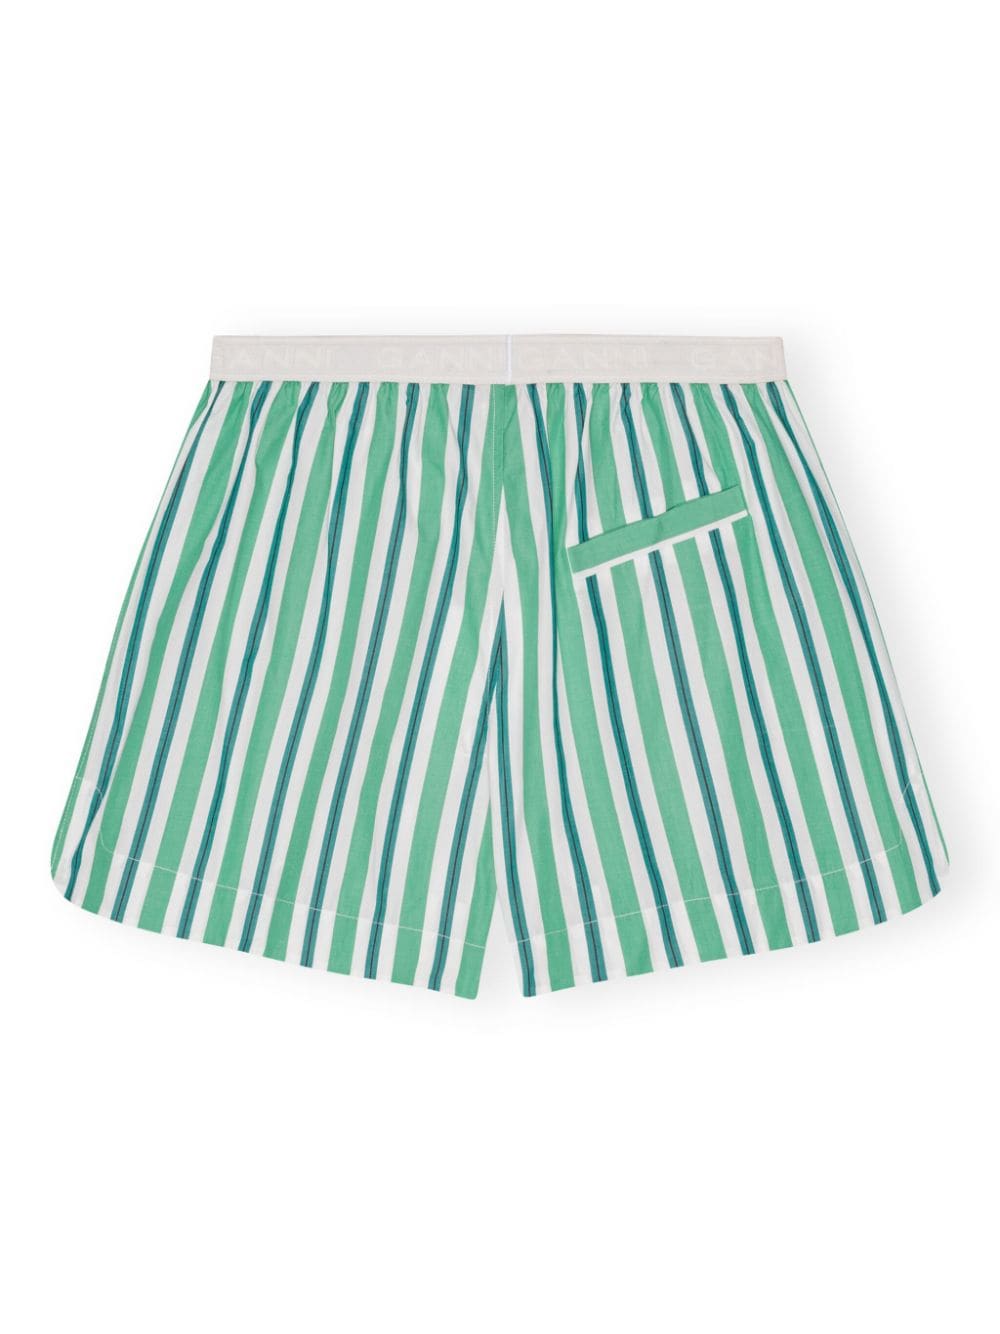 Striped cotton mini shorts<BR/><BR/><BR/><BR/>